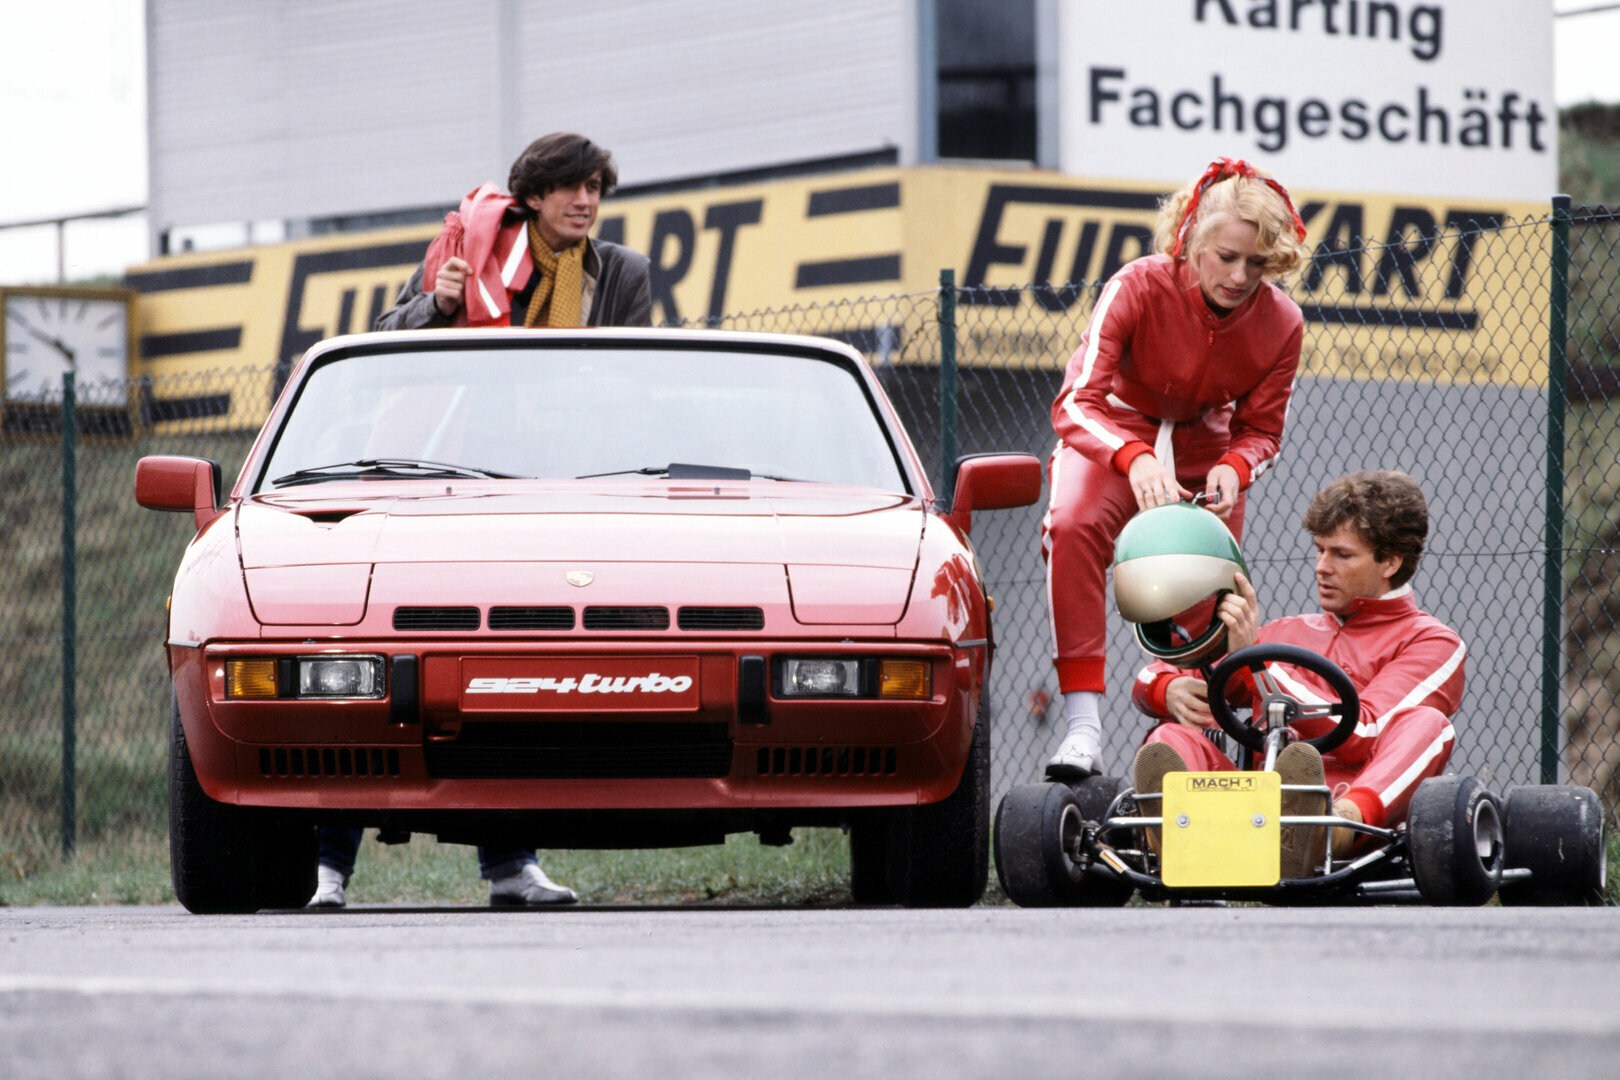 Coche del día: Porsche 924 Turbo